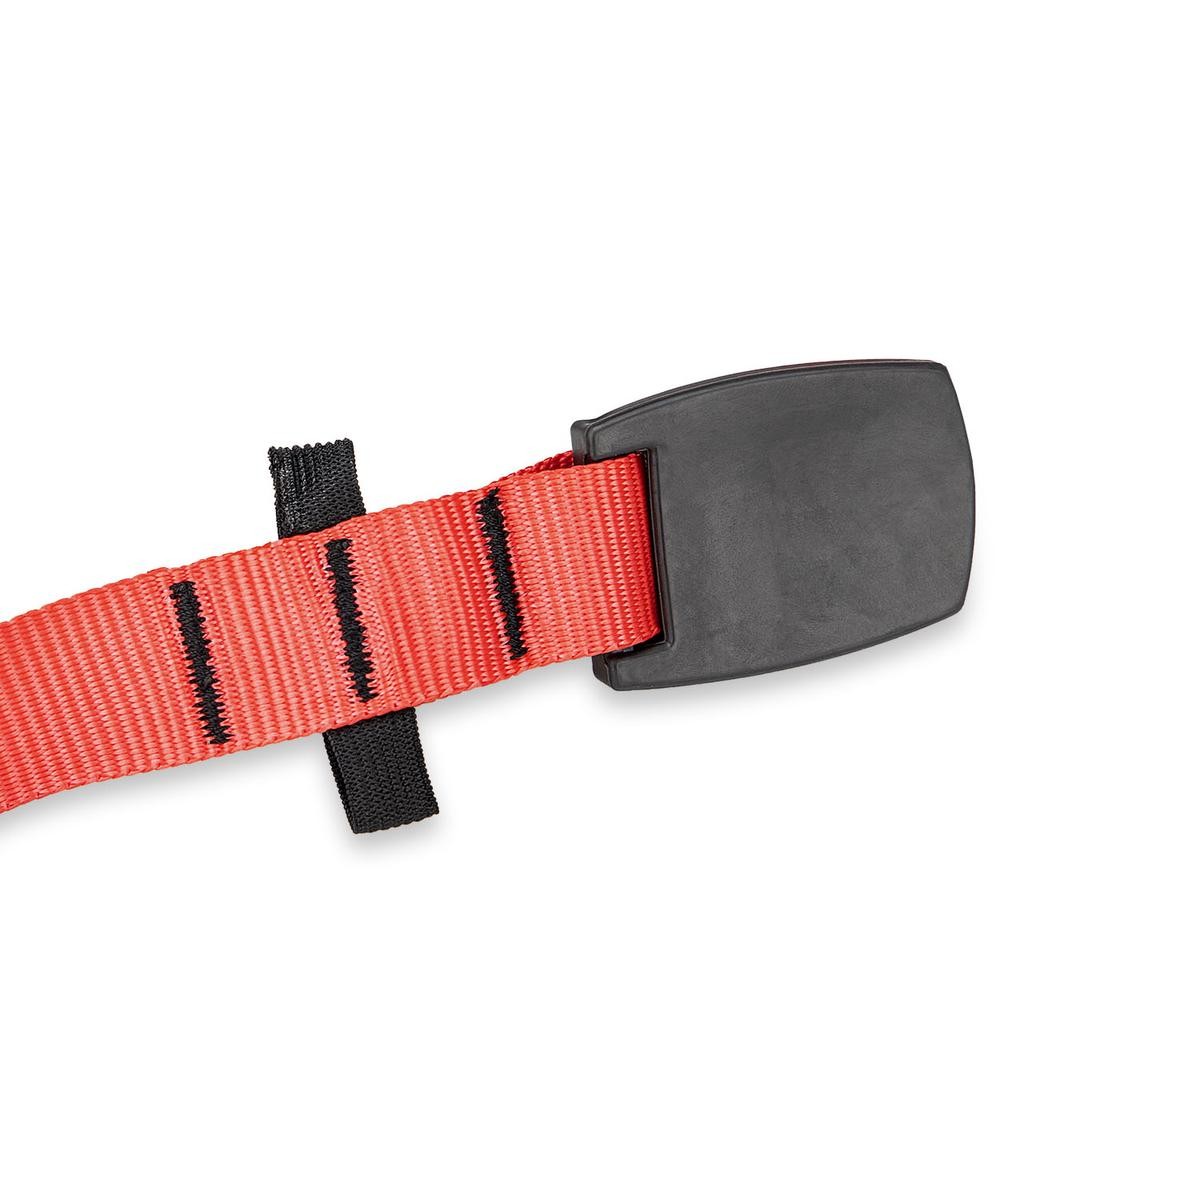 HEYNER 880400 Winch strap black, red, 4 m, 25 mm, 200 kg